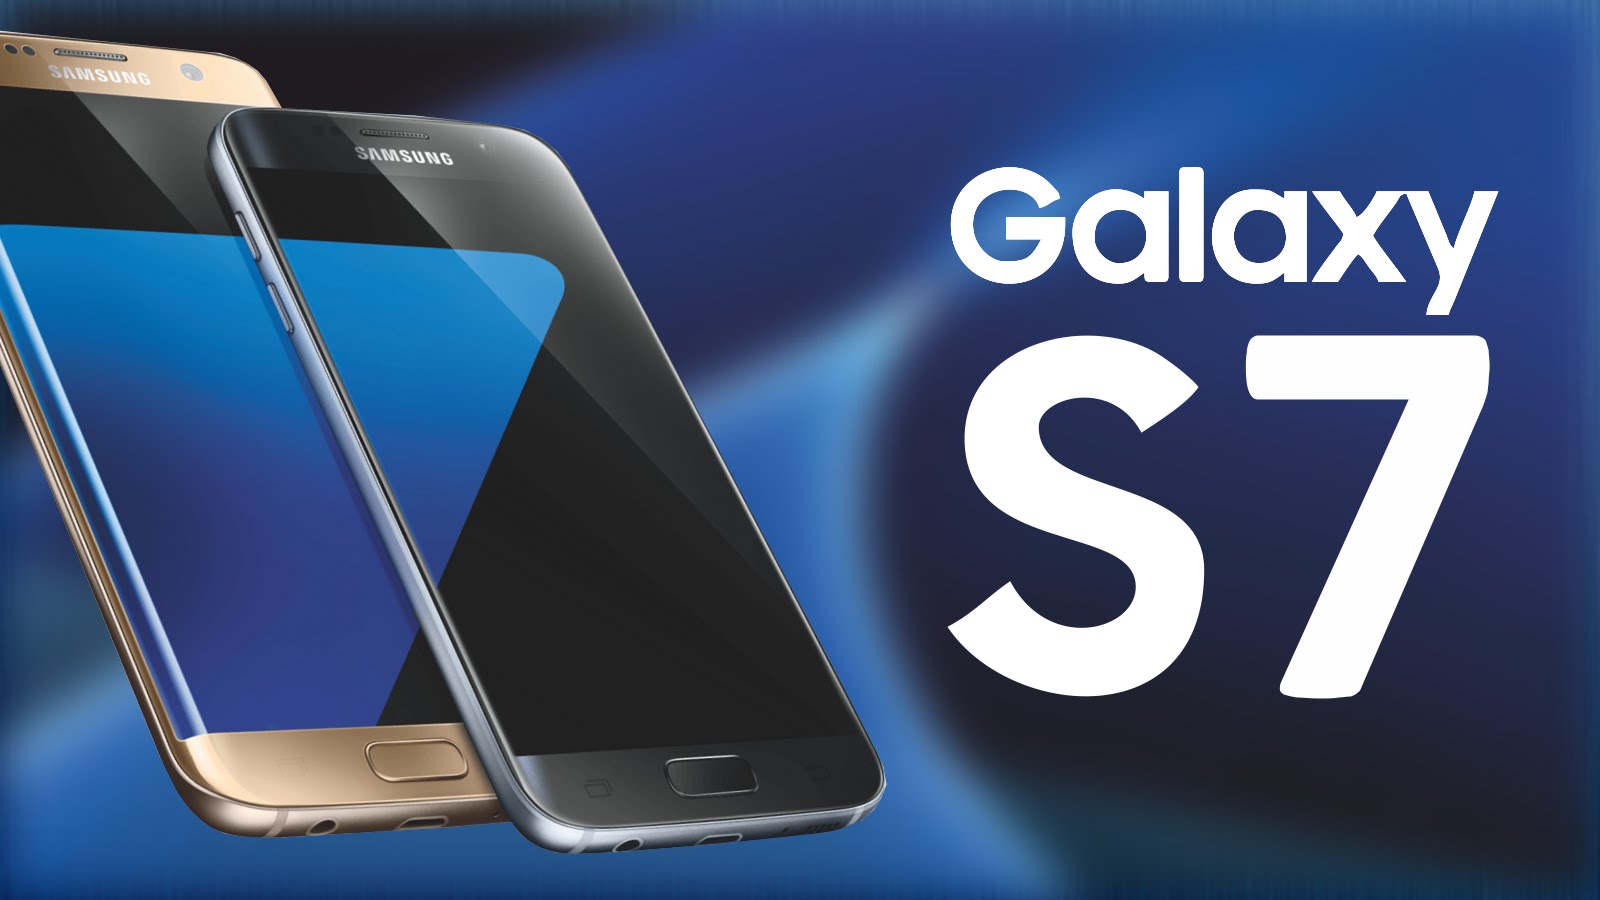 Movil Accesible Samsung Galaxy S7 Discapzine Promoción Del Mundo